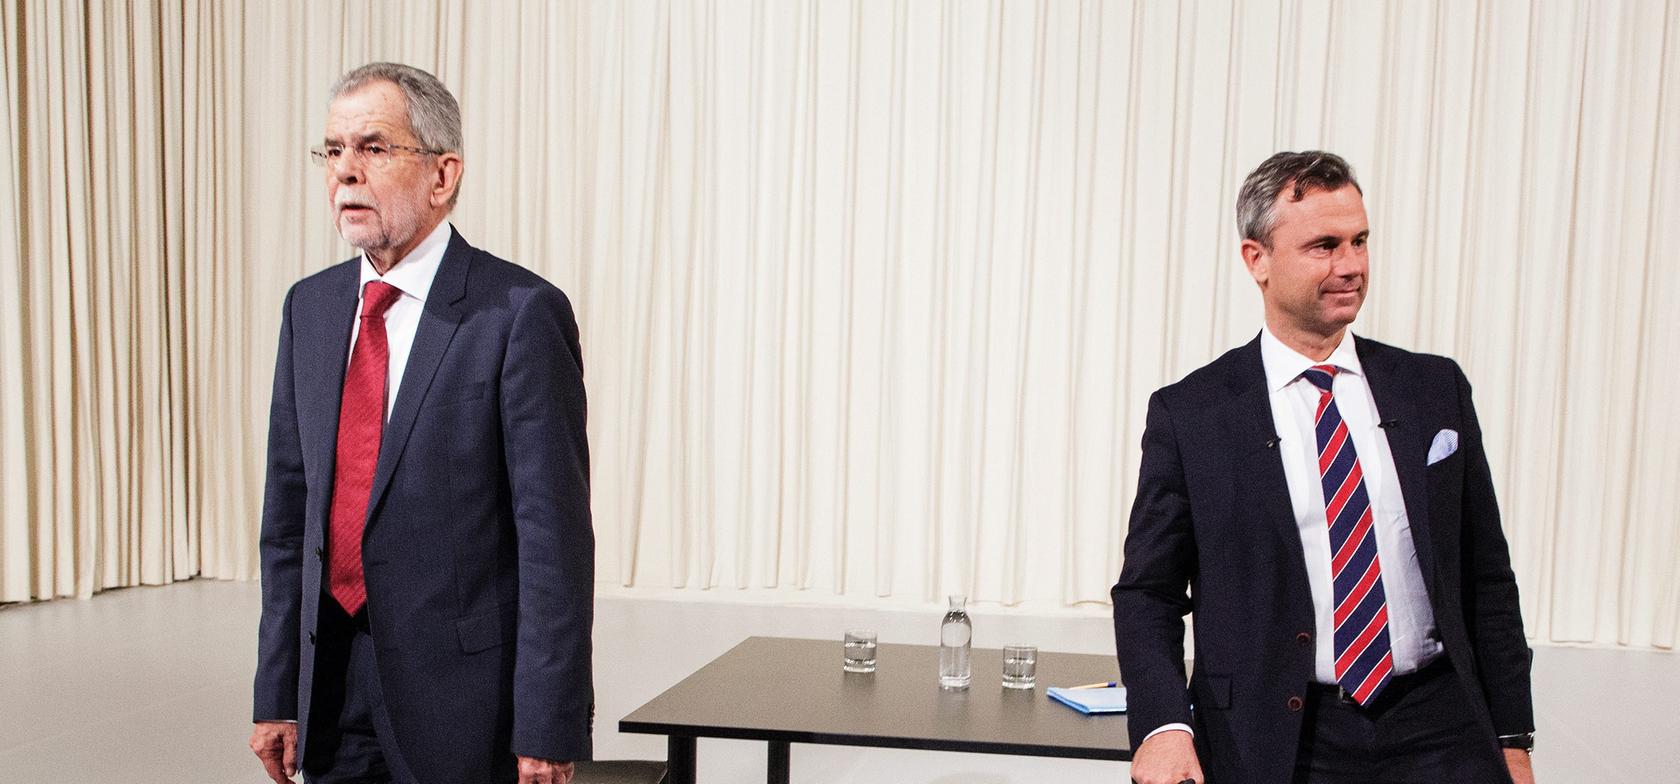 Van der Bellen oder Hofer? Die Präsidentenwahl in Österreich muss wiederholt werden.